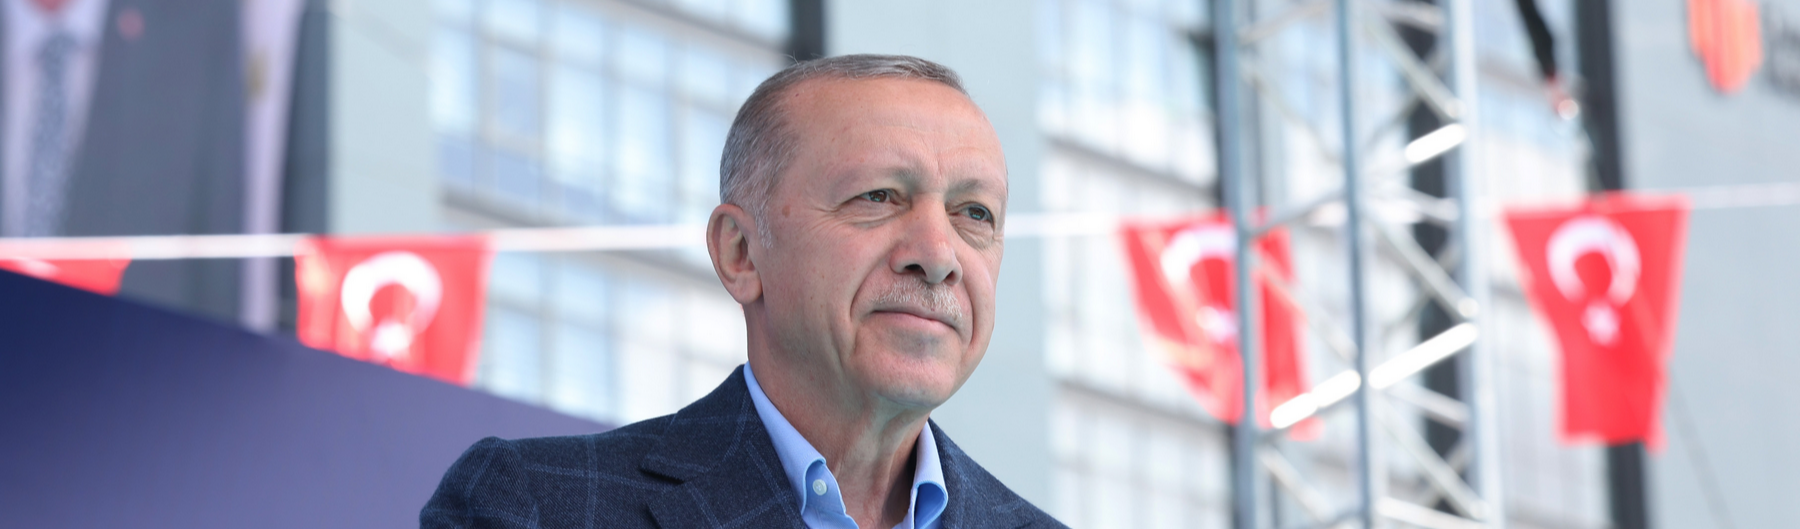 Eleições na Turquia: para Ocidente, Erdogan deve ser derrotado. O que isso nos diz?